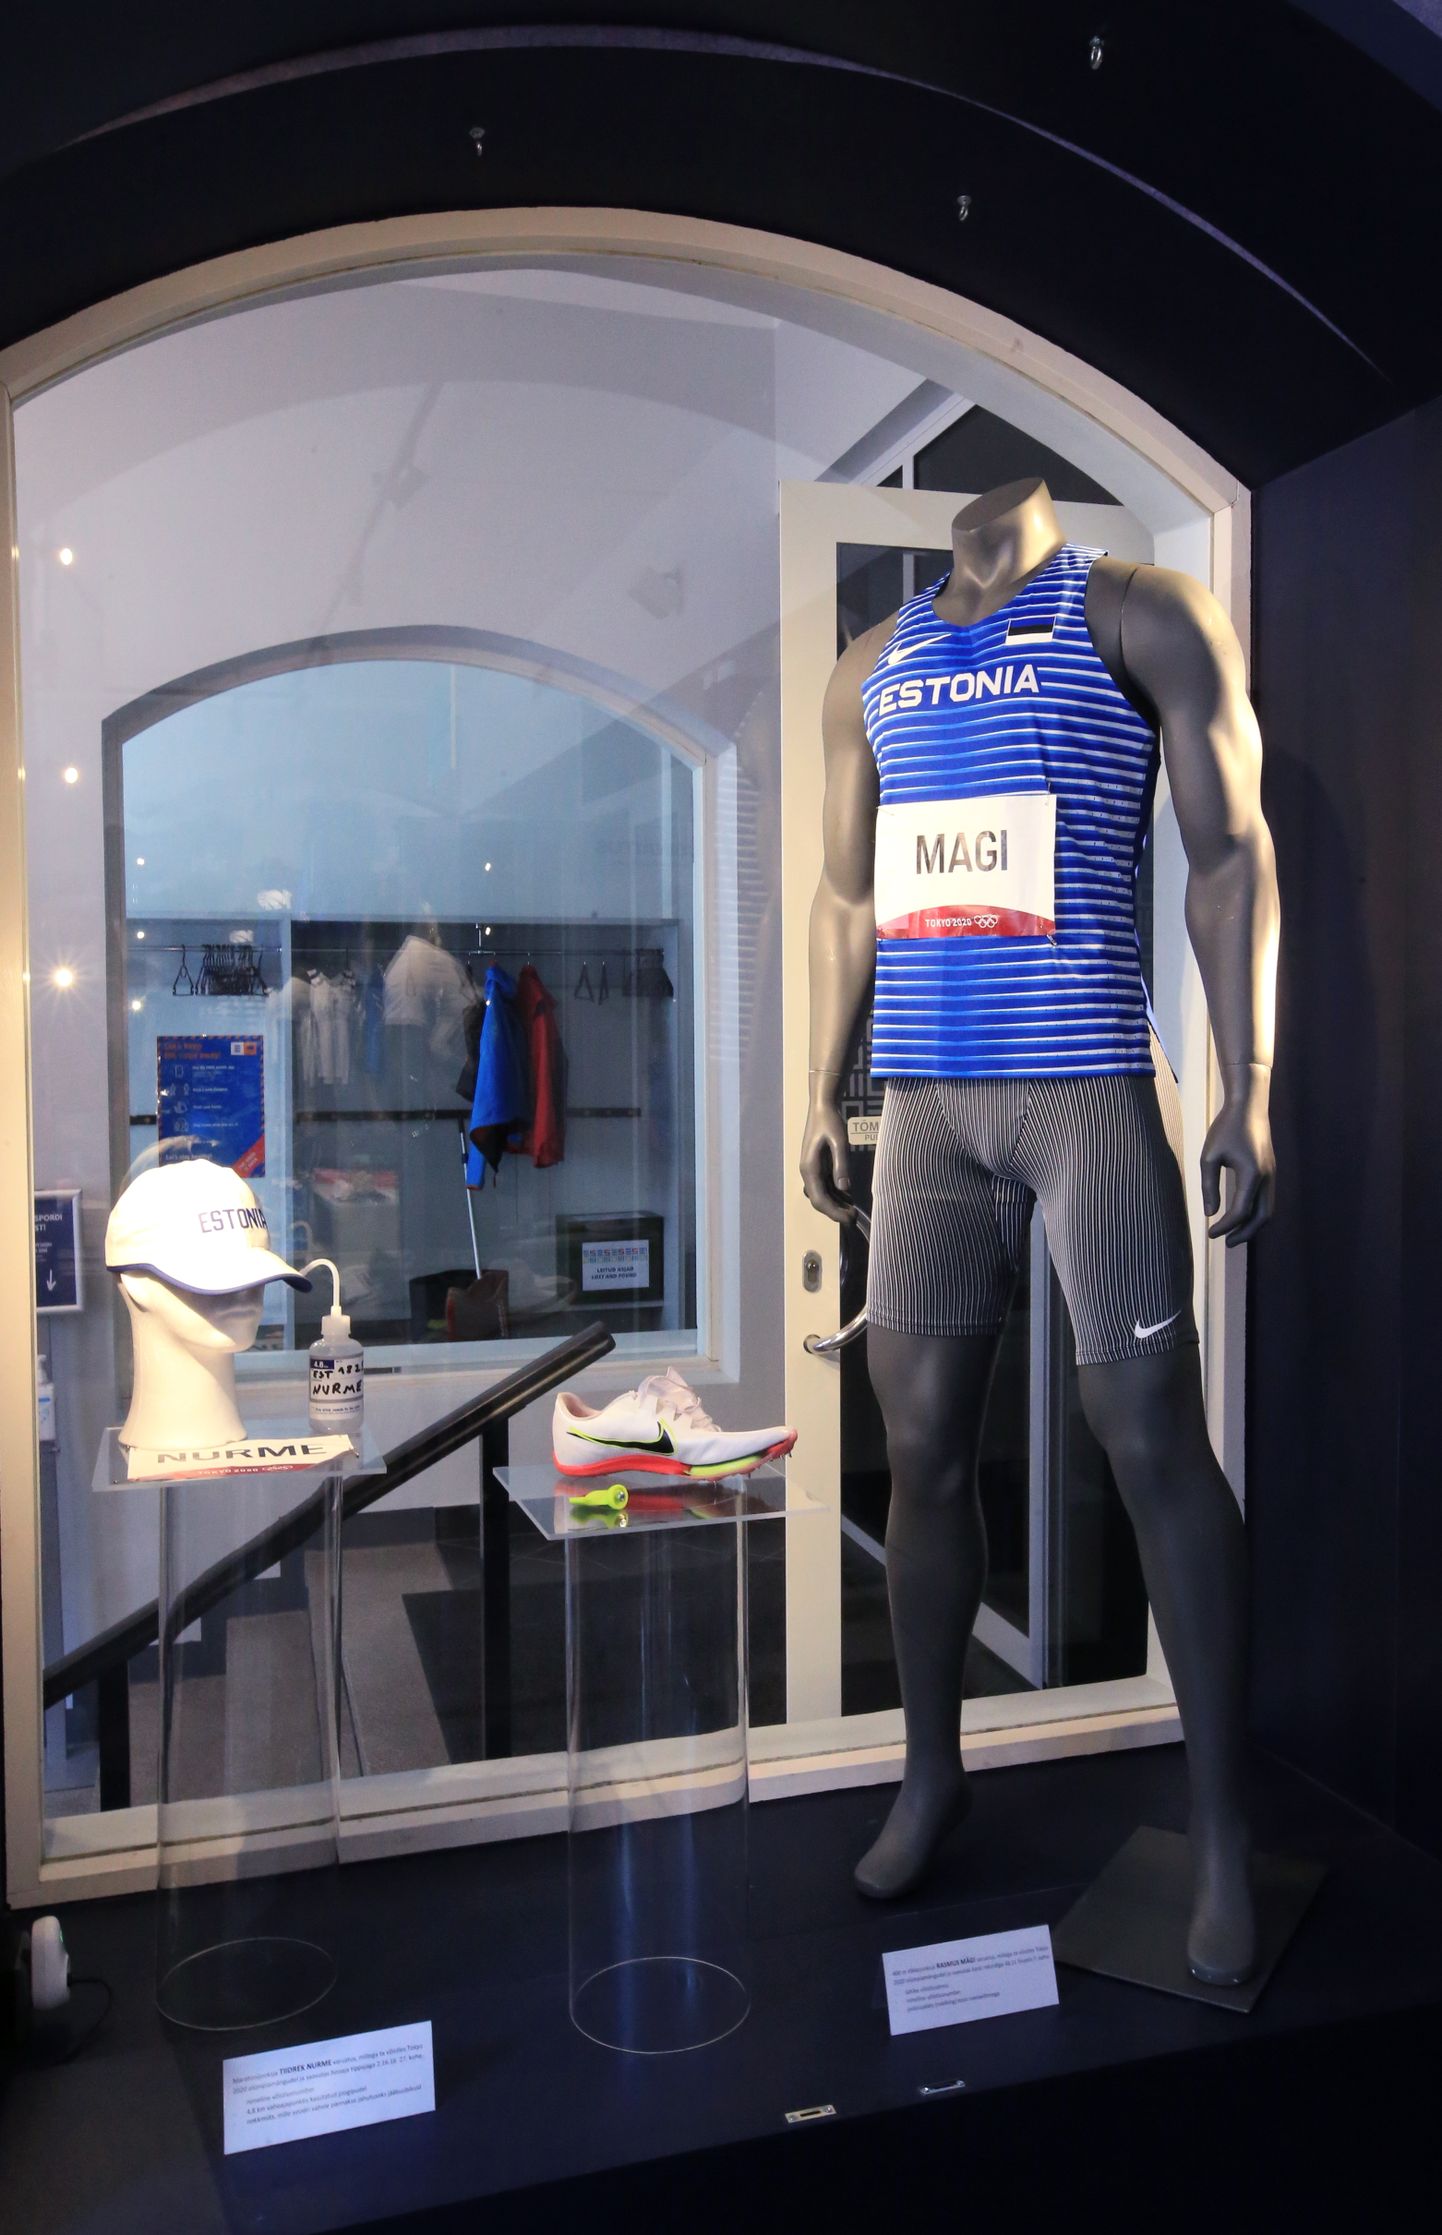 Spordimuuseumis on näiteks Rasmus Mägi seitsmenda kohaga lõppenud Tokyo olümpia jooksuvorm, nüüd saab seal kuulda ka tõkkejooksja audiogiidi.